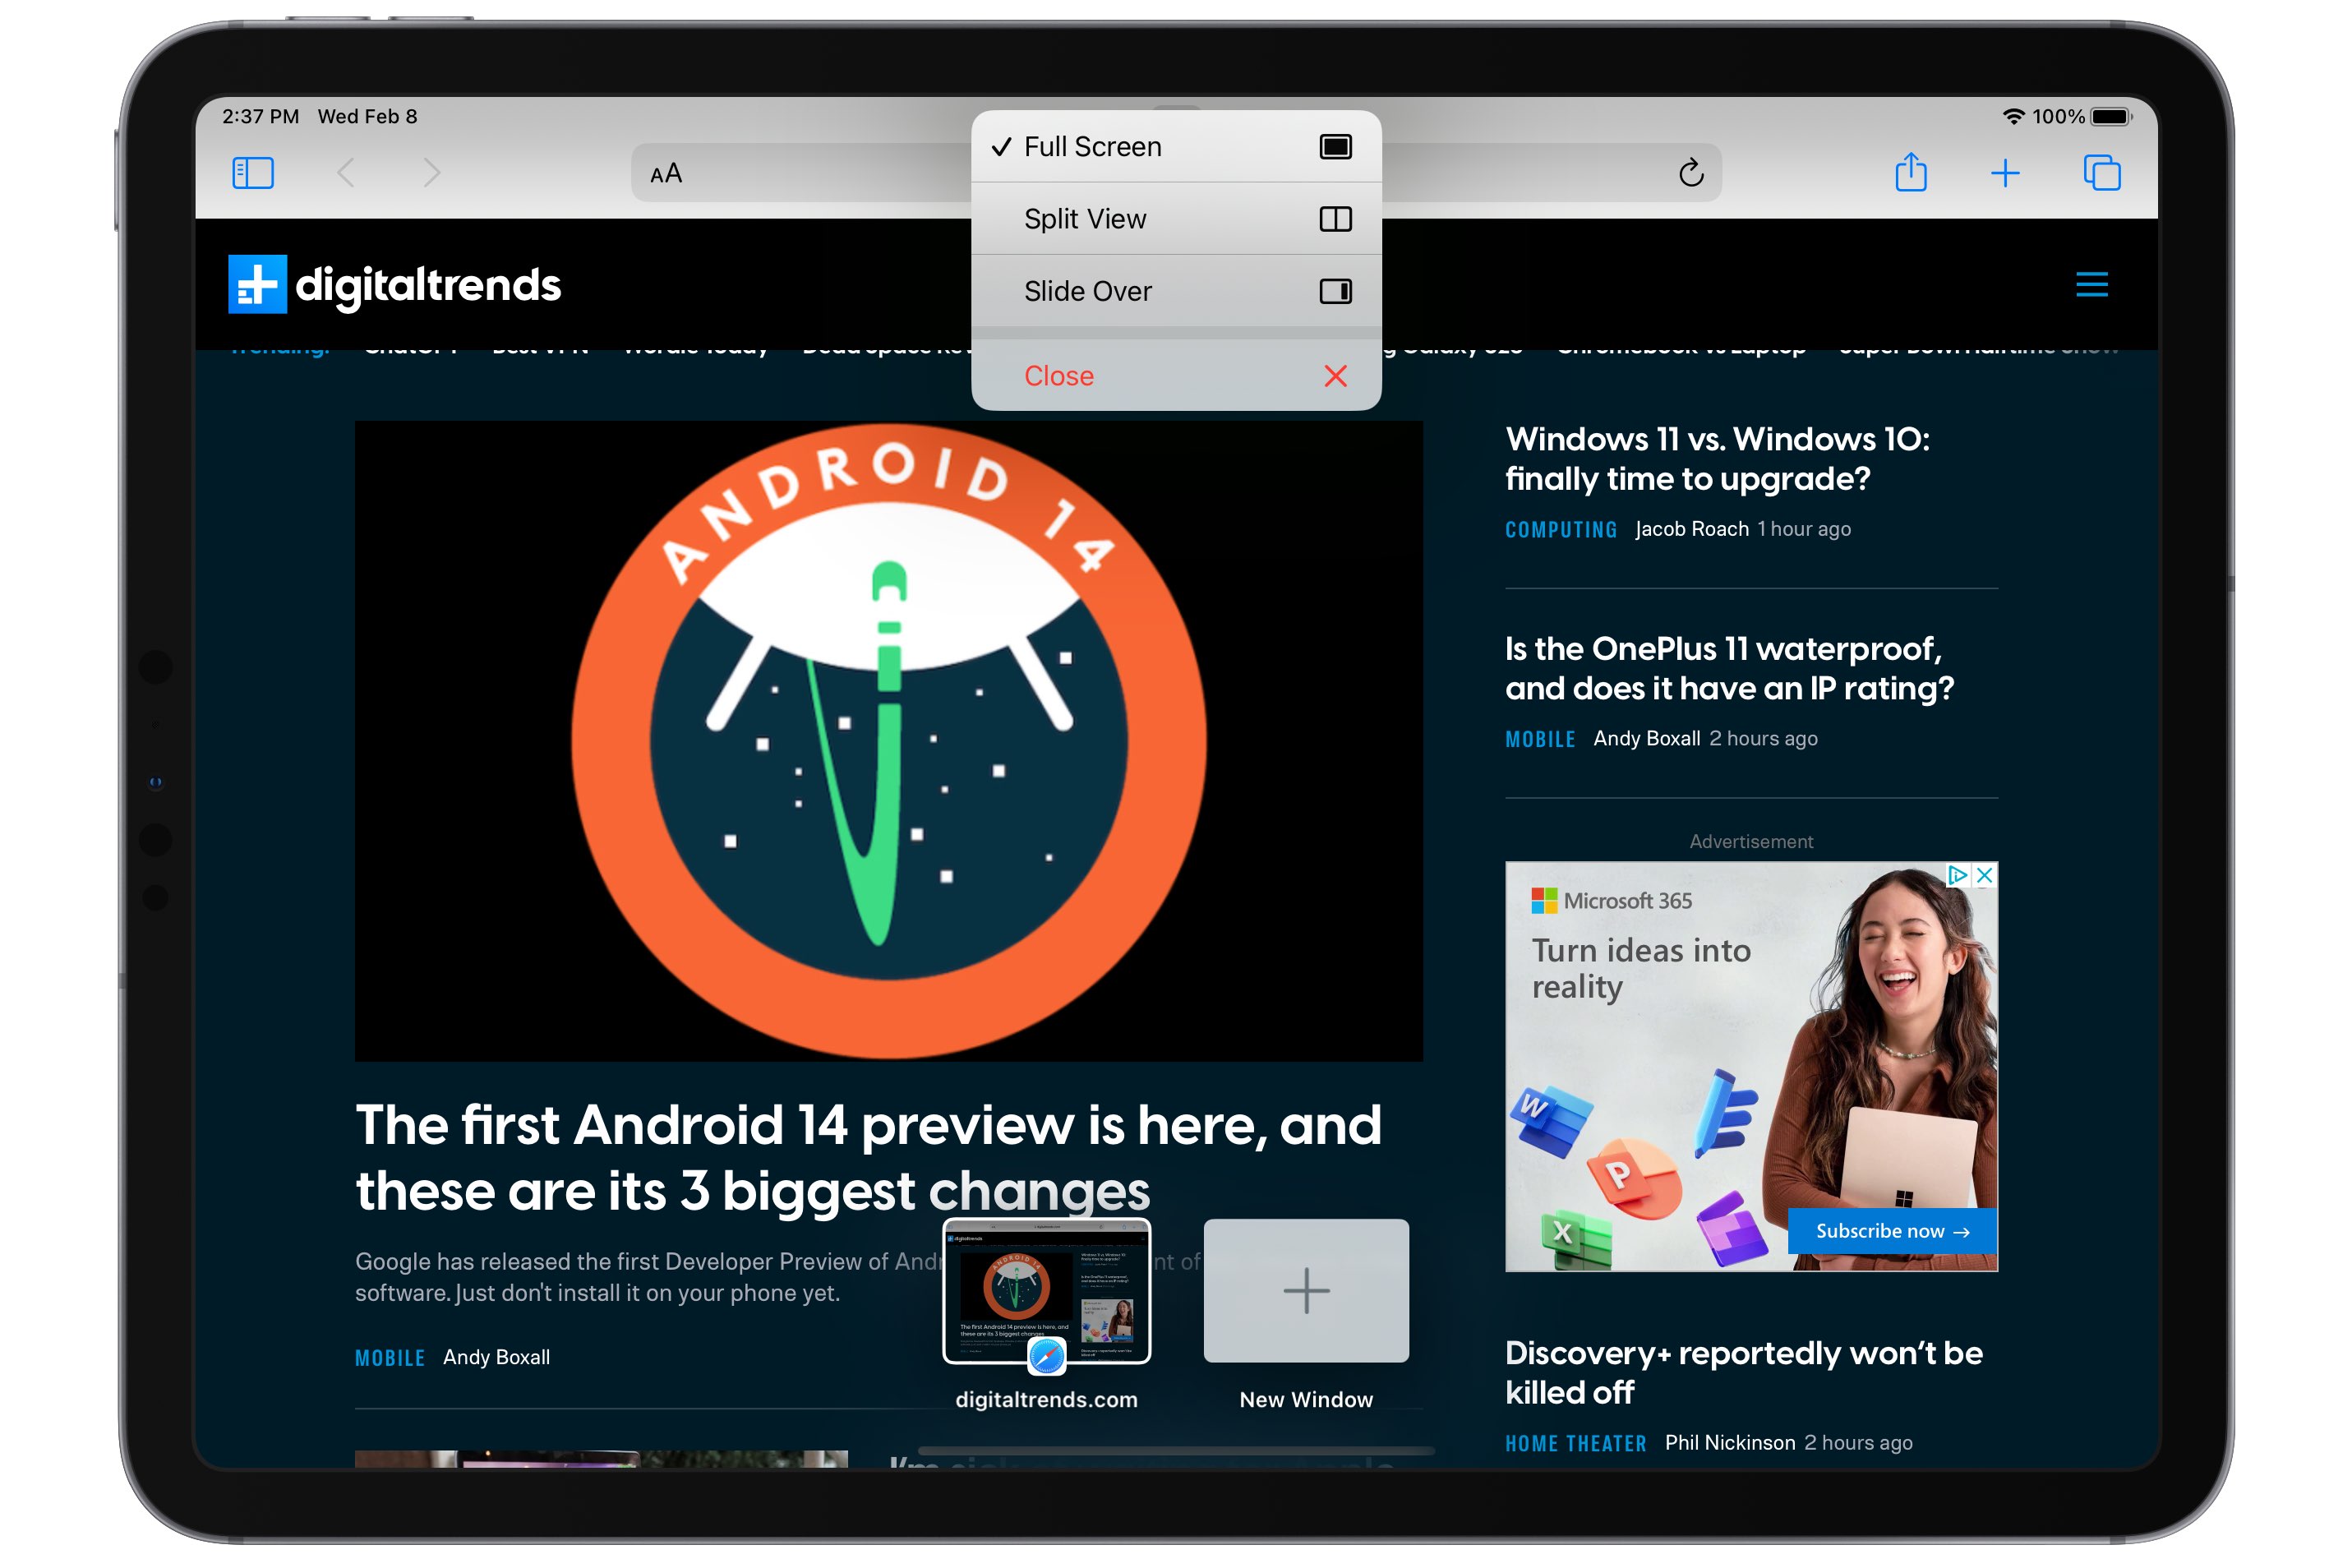 Safari on iPad showing Multitasking View menu.